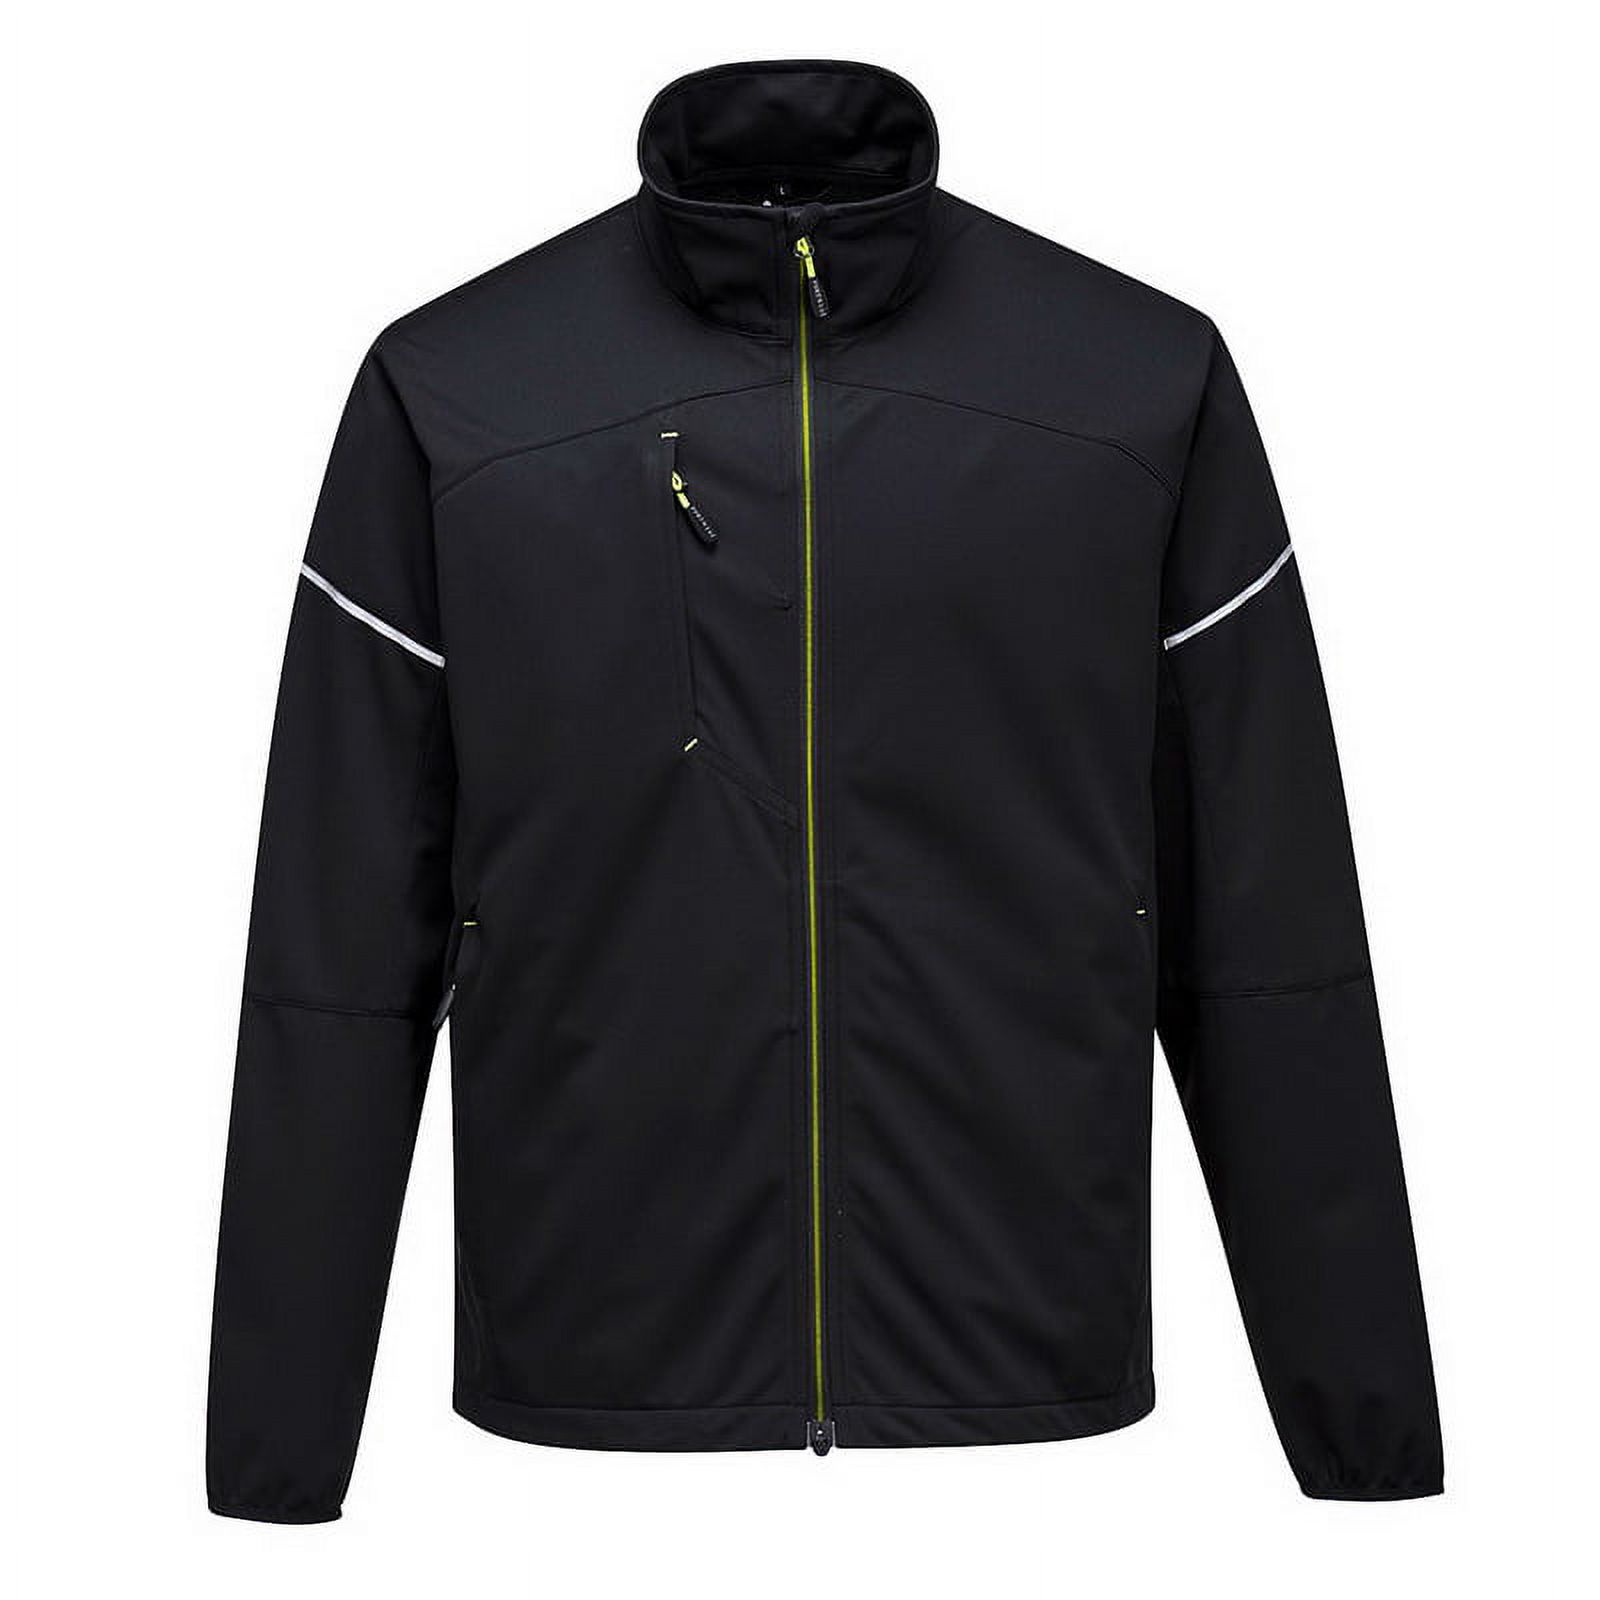 Portwest T620 PW3 Flexible Shell Workwear Jacket Black, Large - image 1 of 2